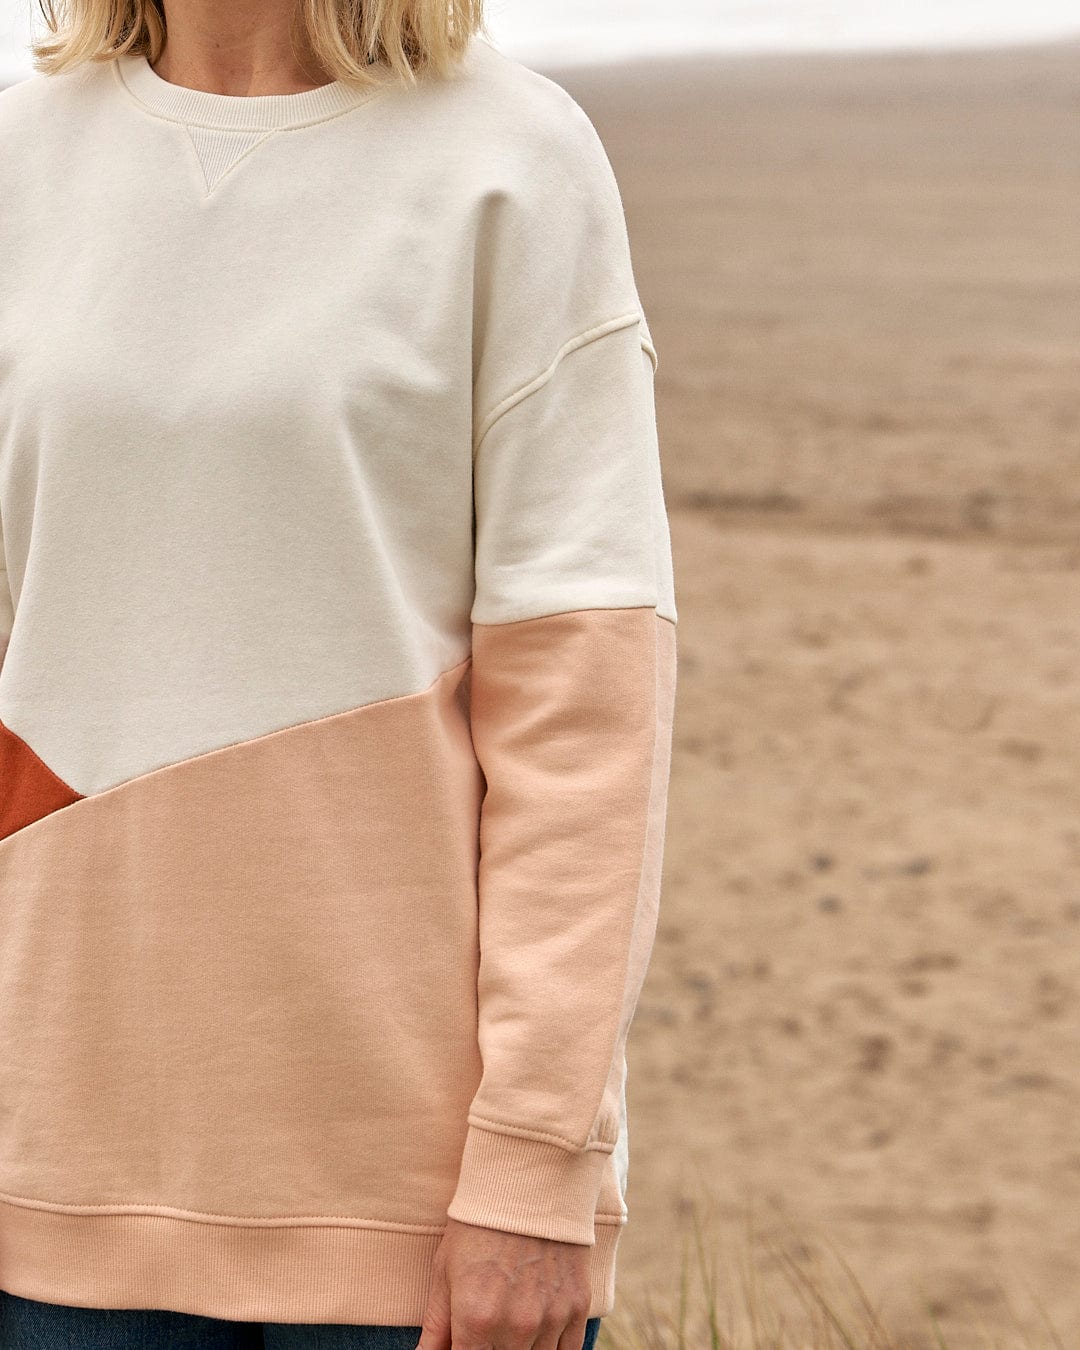 A woman is standing on the beach wearing a Saltrock Sofie - Womens Boyfriend Fit Sweat - Light Orange/Cream sweater.